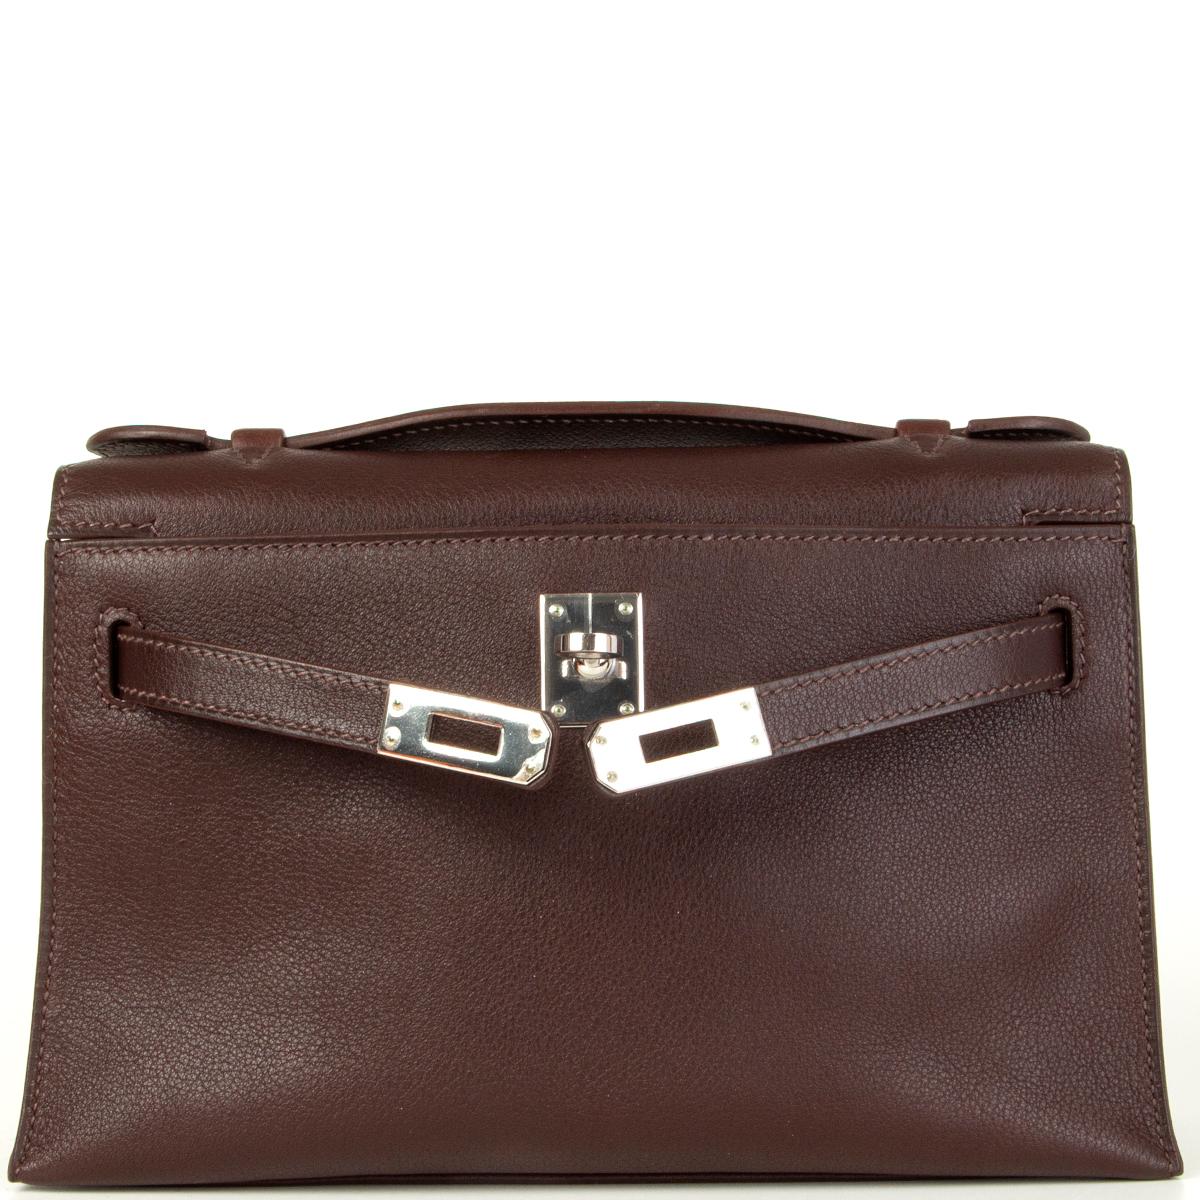 Women's HERMES Havane brown Swift leather KELLY POCHETTE Clutch Bag